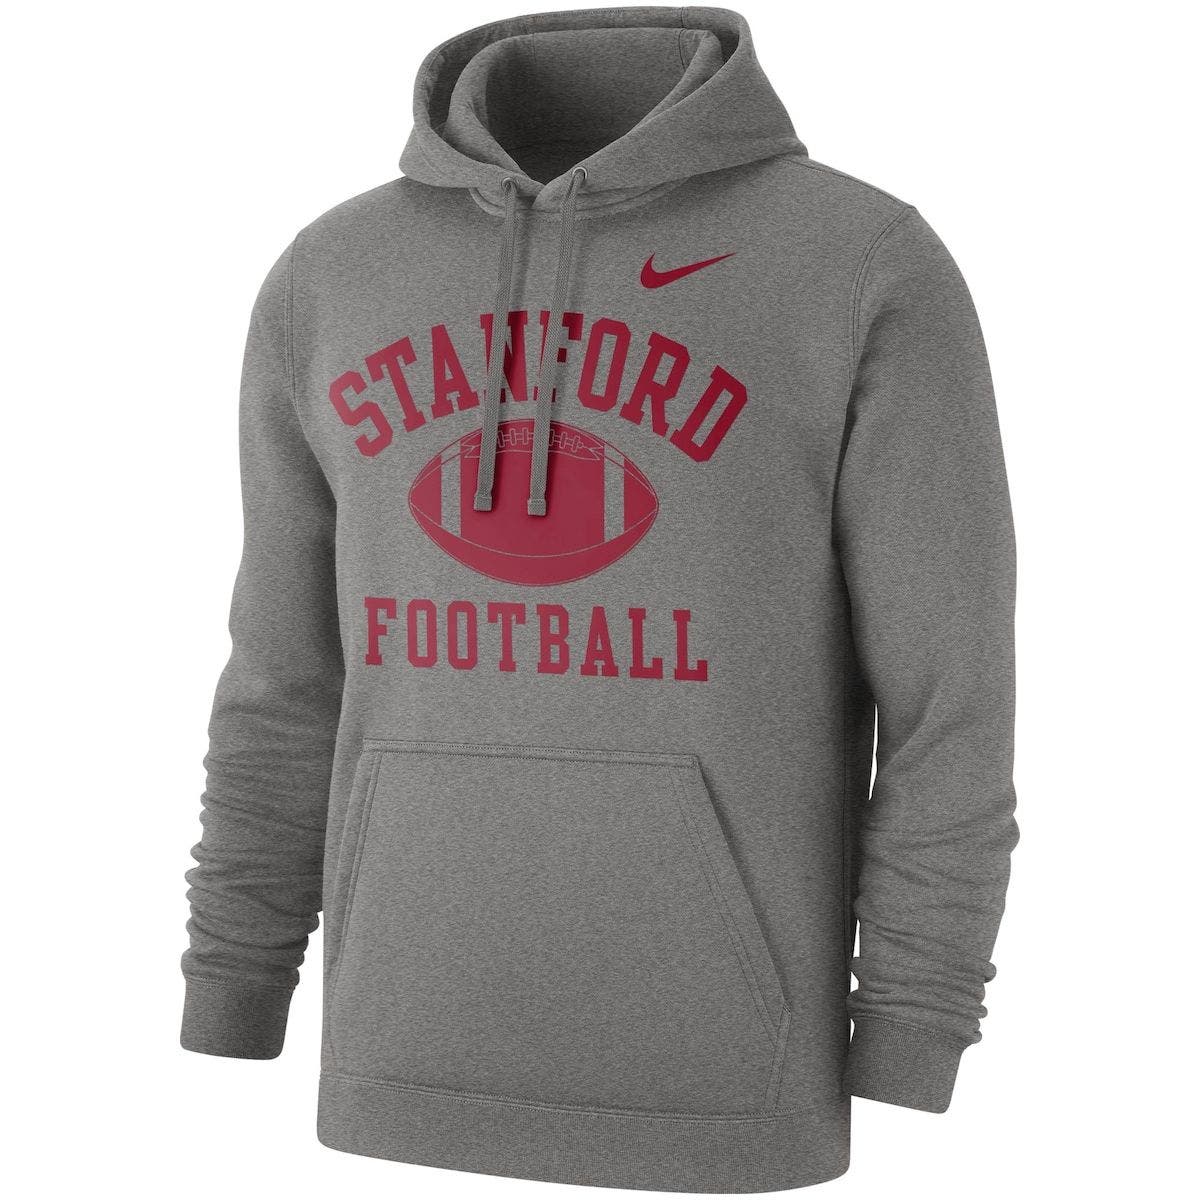 Stanford Football Hoodies